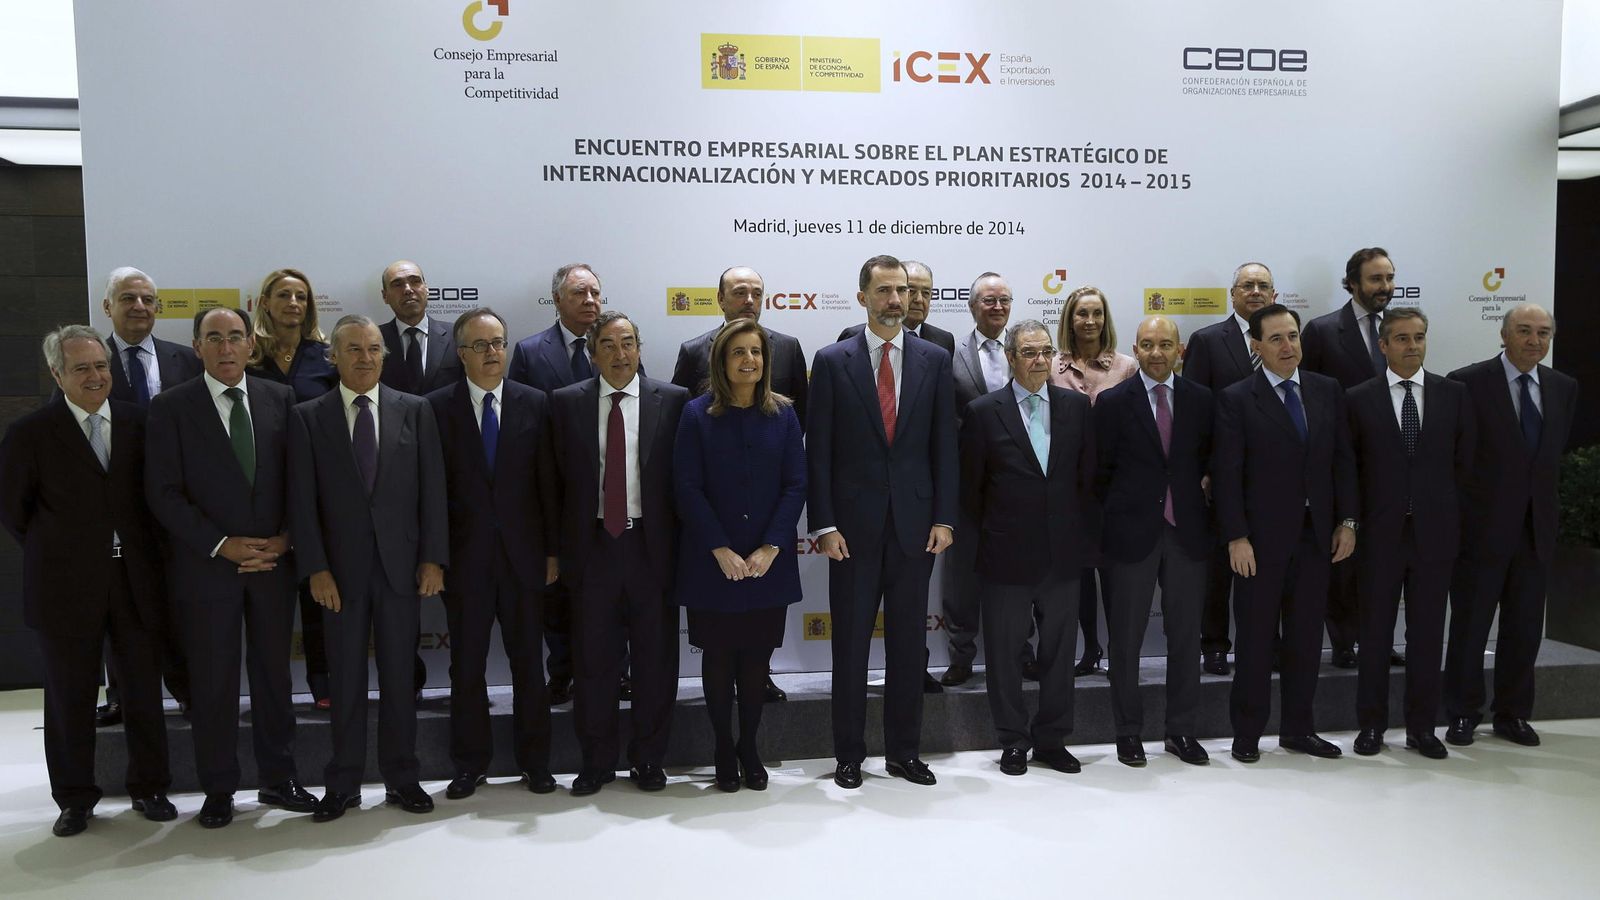 Foto: Los presidentes de las principales empresas españolas junto al Rey Felipe VI. (Efe)